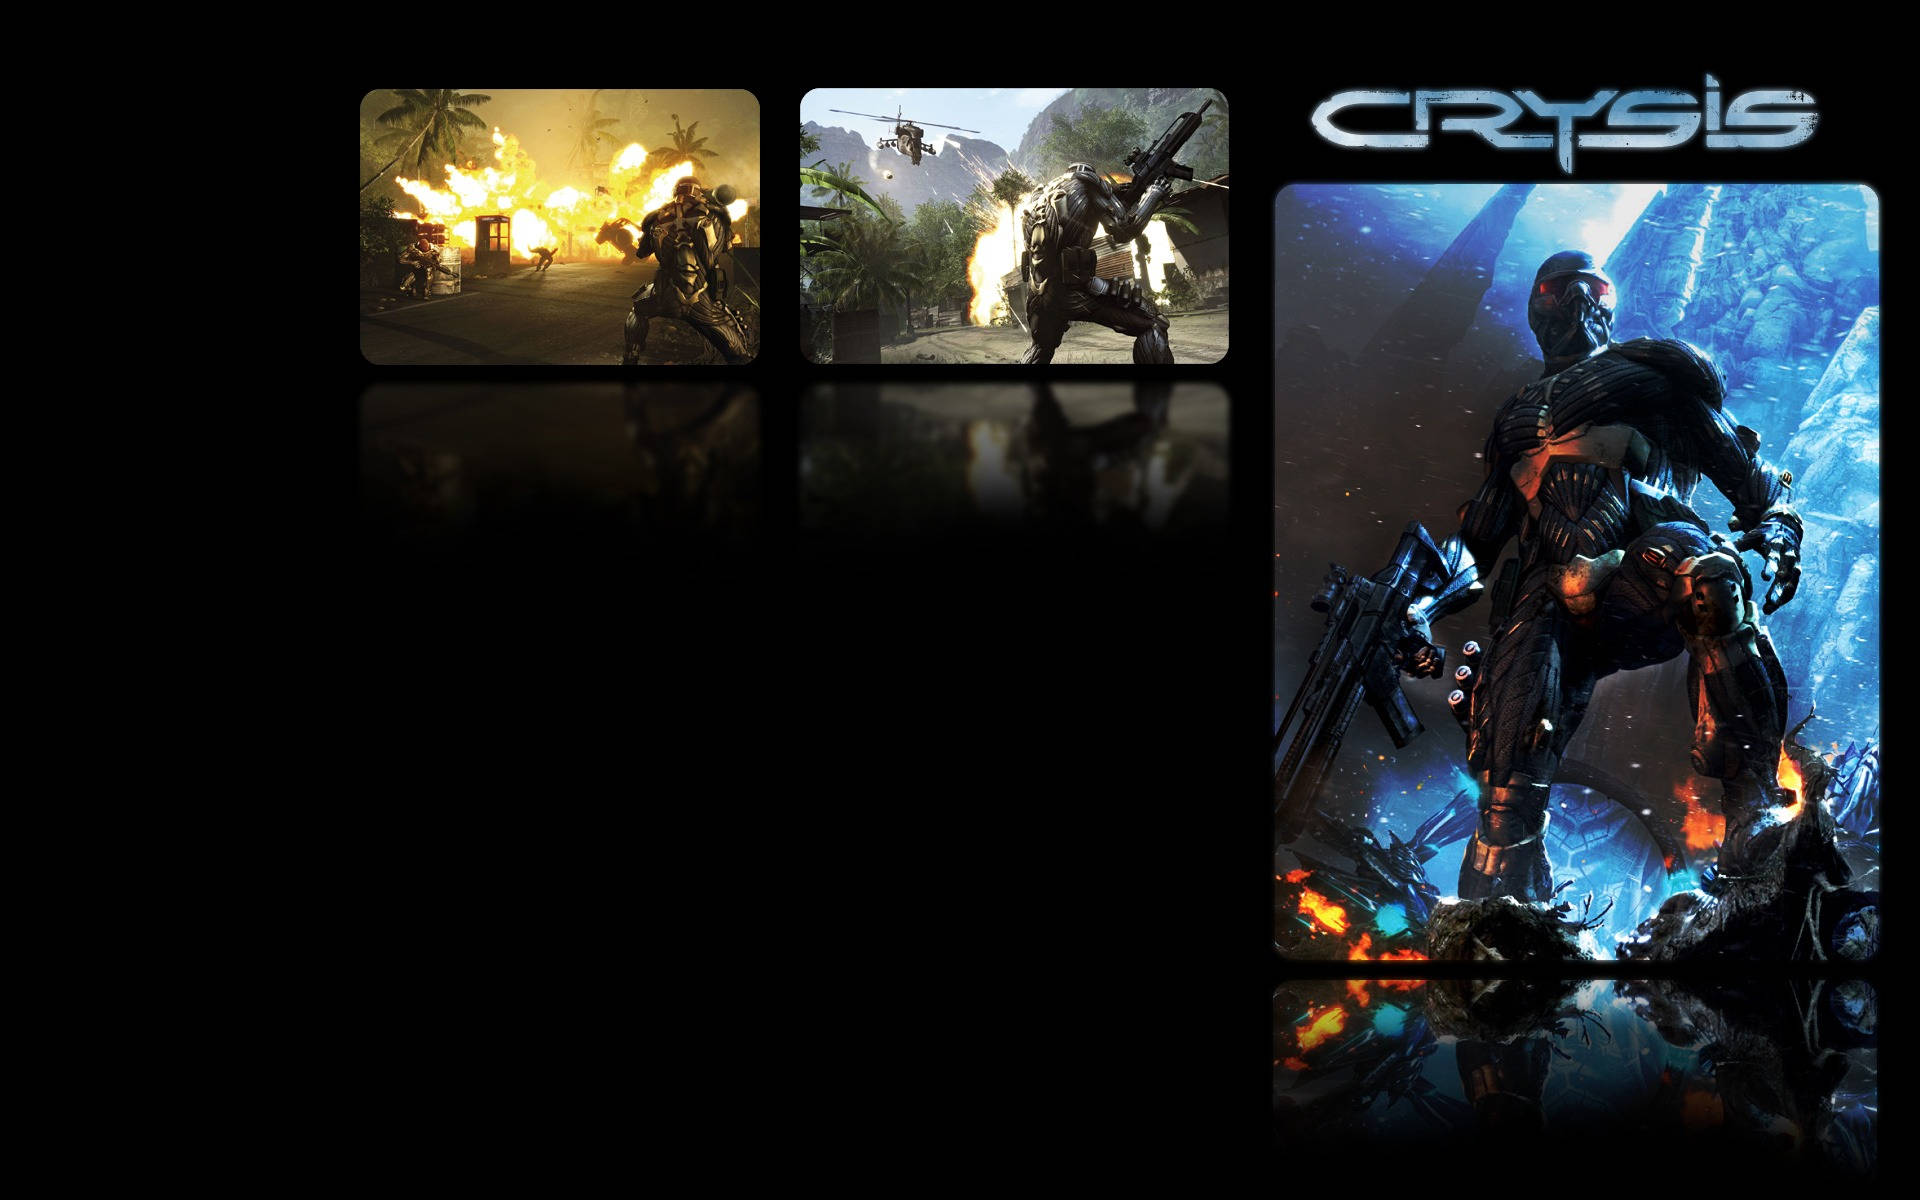 Crysis3 Collage 4k: Crysis 3-kollage I 4k-upplösning. Wallpaper